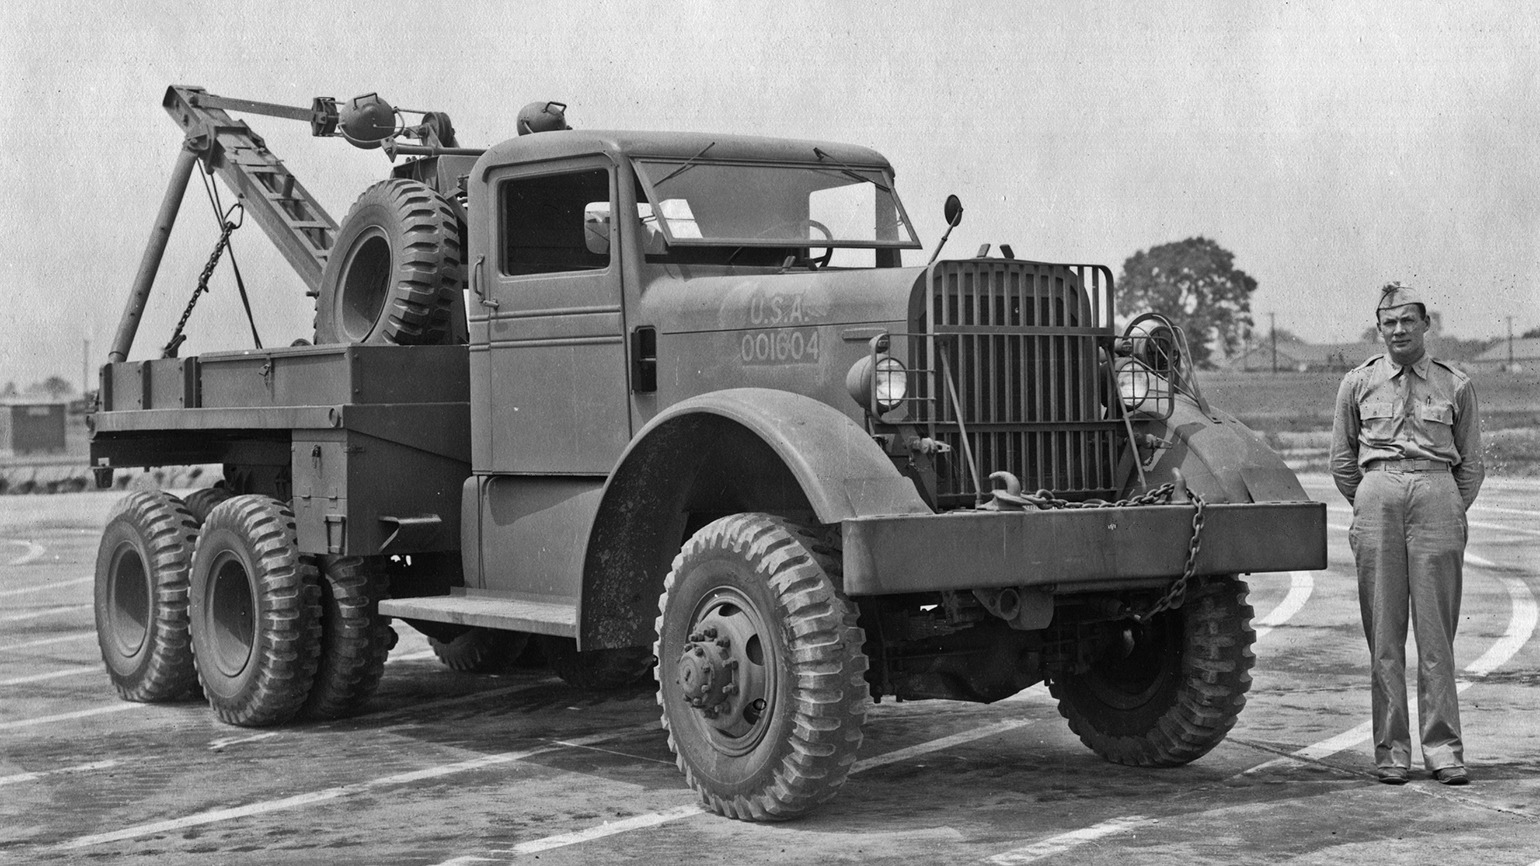 Også Kenworth hjalp til under andre verdenskrig. De bygde lastebiler, samt flydeler til bombefly. 